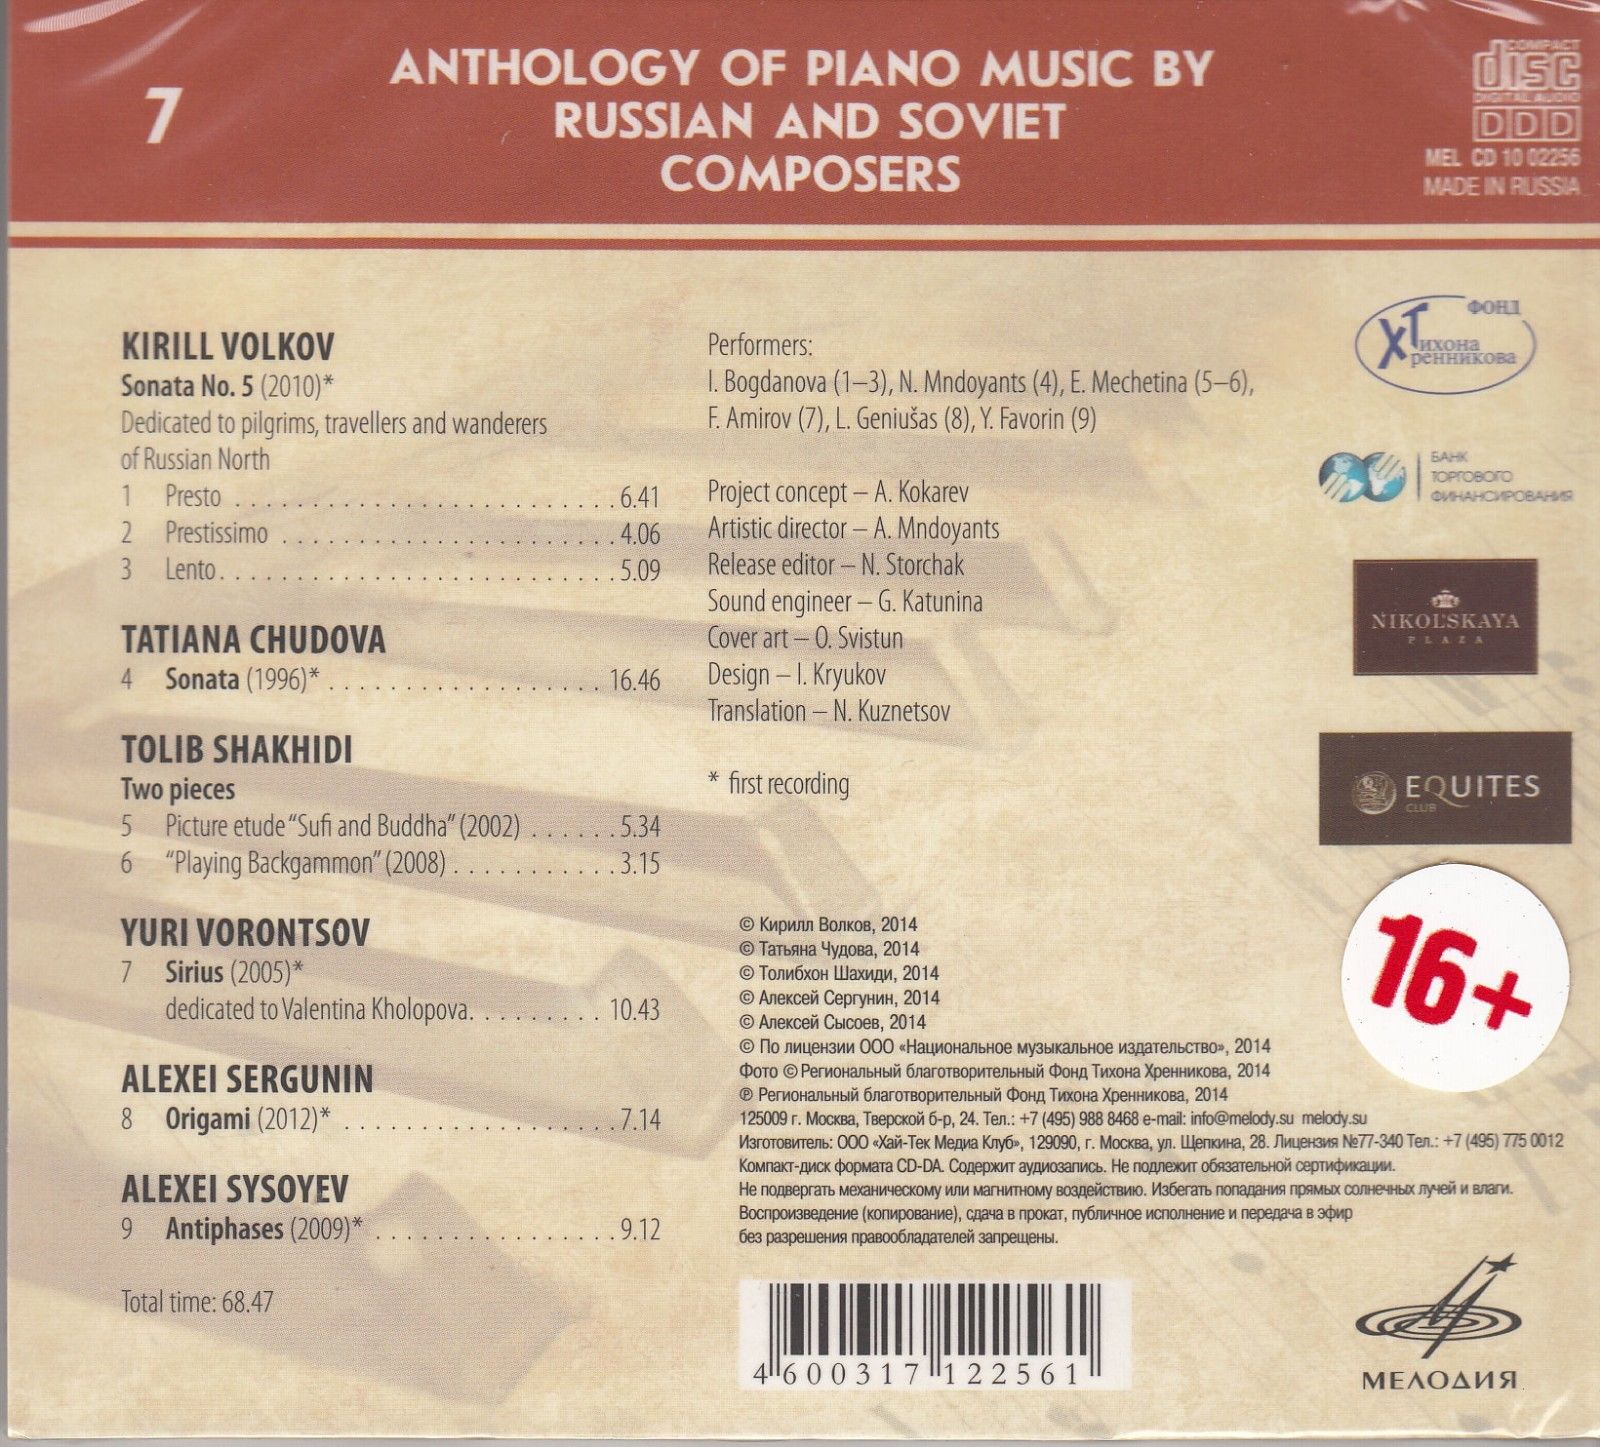 Антология фортепианной музыки русских и советских композиторов. Часть 2 (1991— н.в.) диск 2 (7)